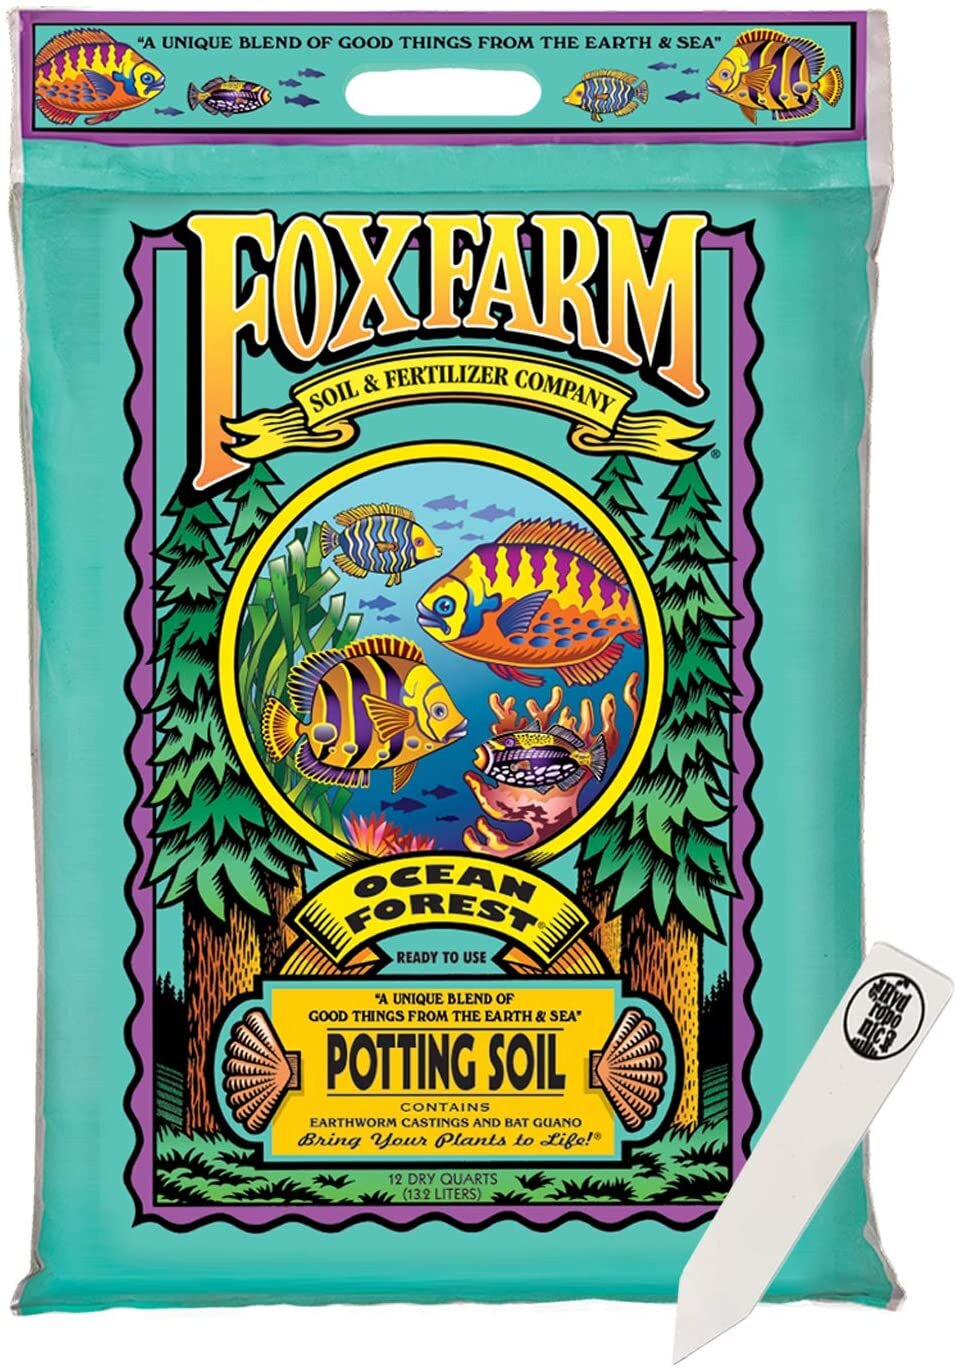 Fox Farm Ocean Forest Soil